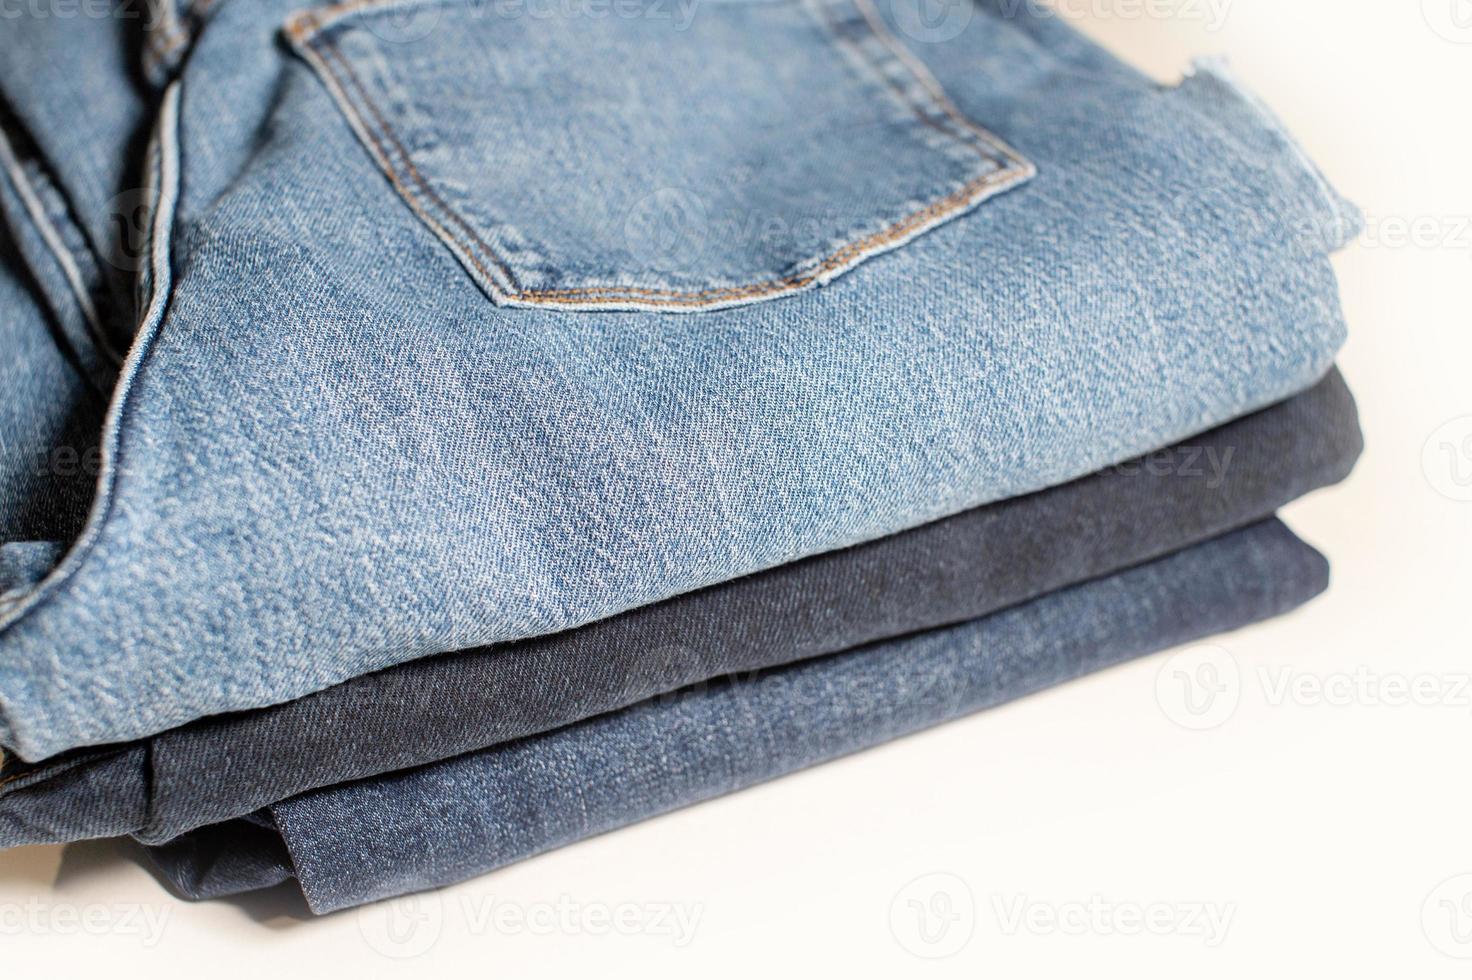 jeans broek stack Aan wit achtergrond en ruimte voor tekst ontwerp concept foto